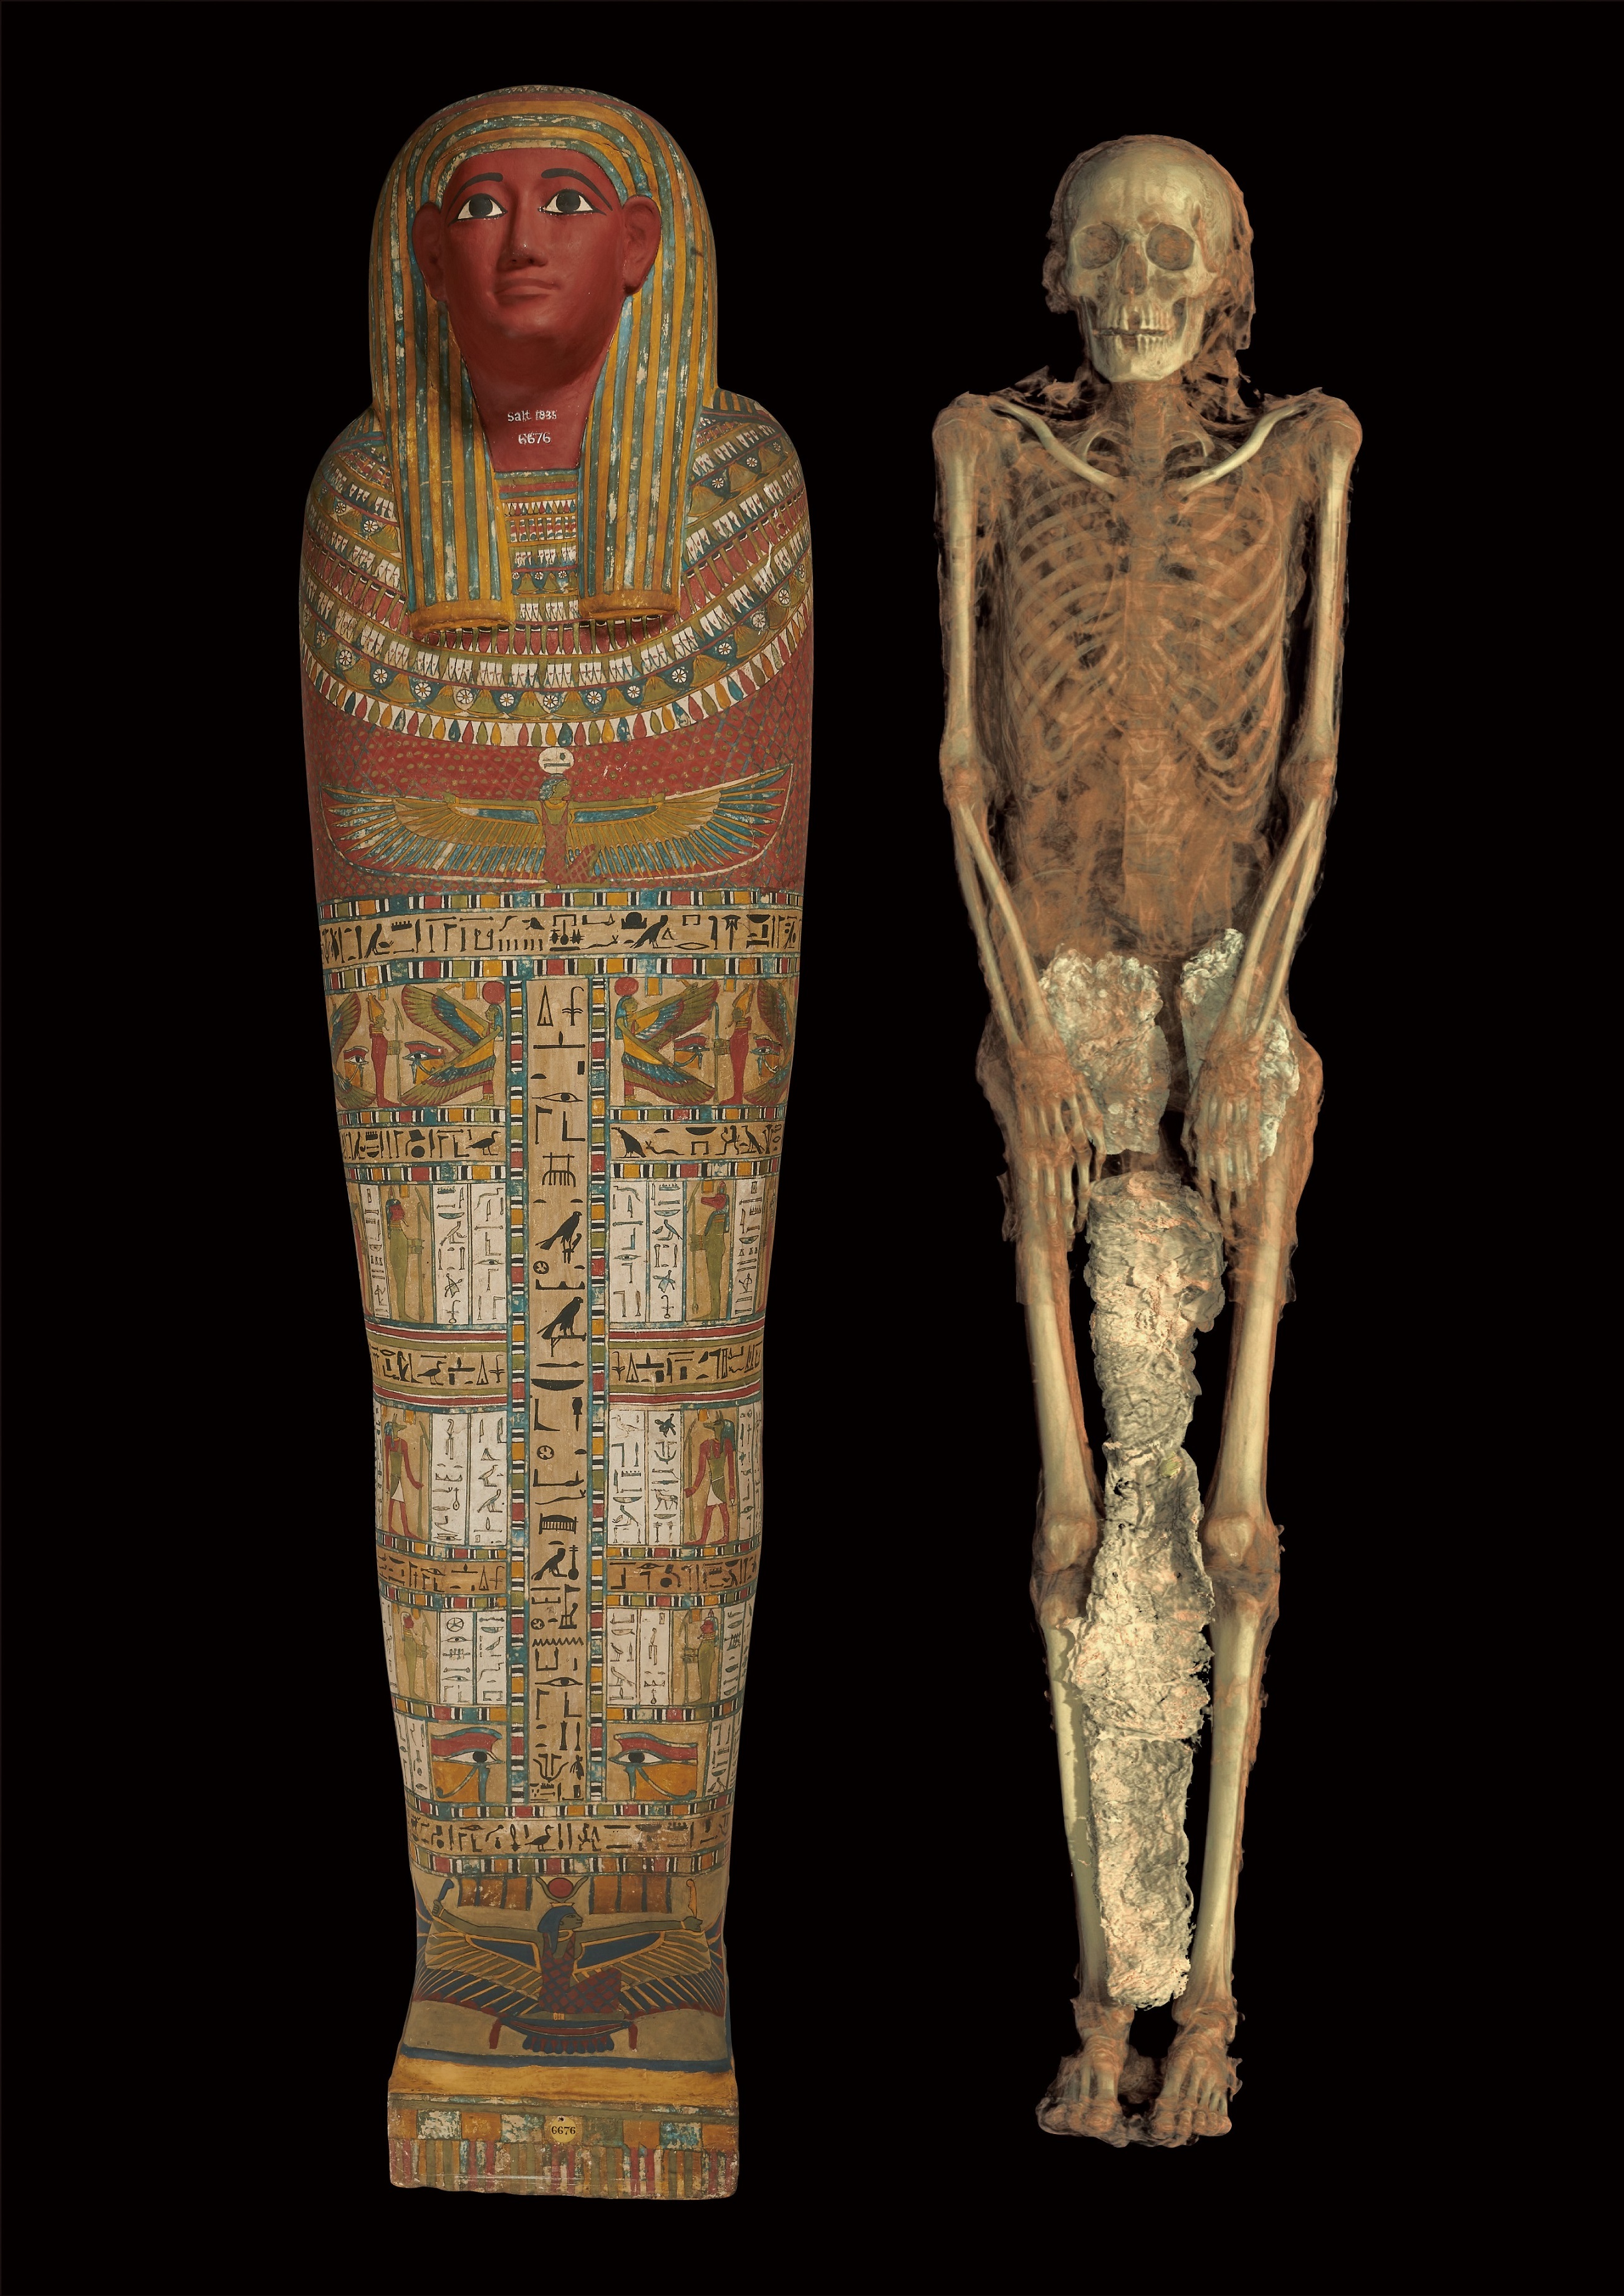 ペンアメンネブネスウトタウイの内棺と、ミイラのCTスキャン画像から作成した3次元構築画像 第3中間期・第25王朝、前700年頃　大英博物館　 (c) The Trustees of the British Museum